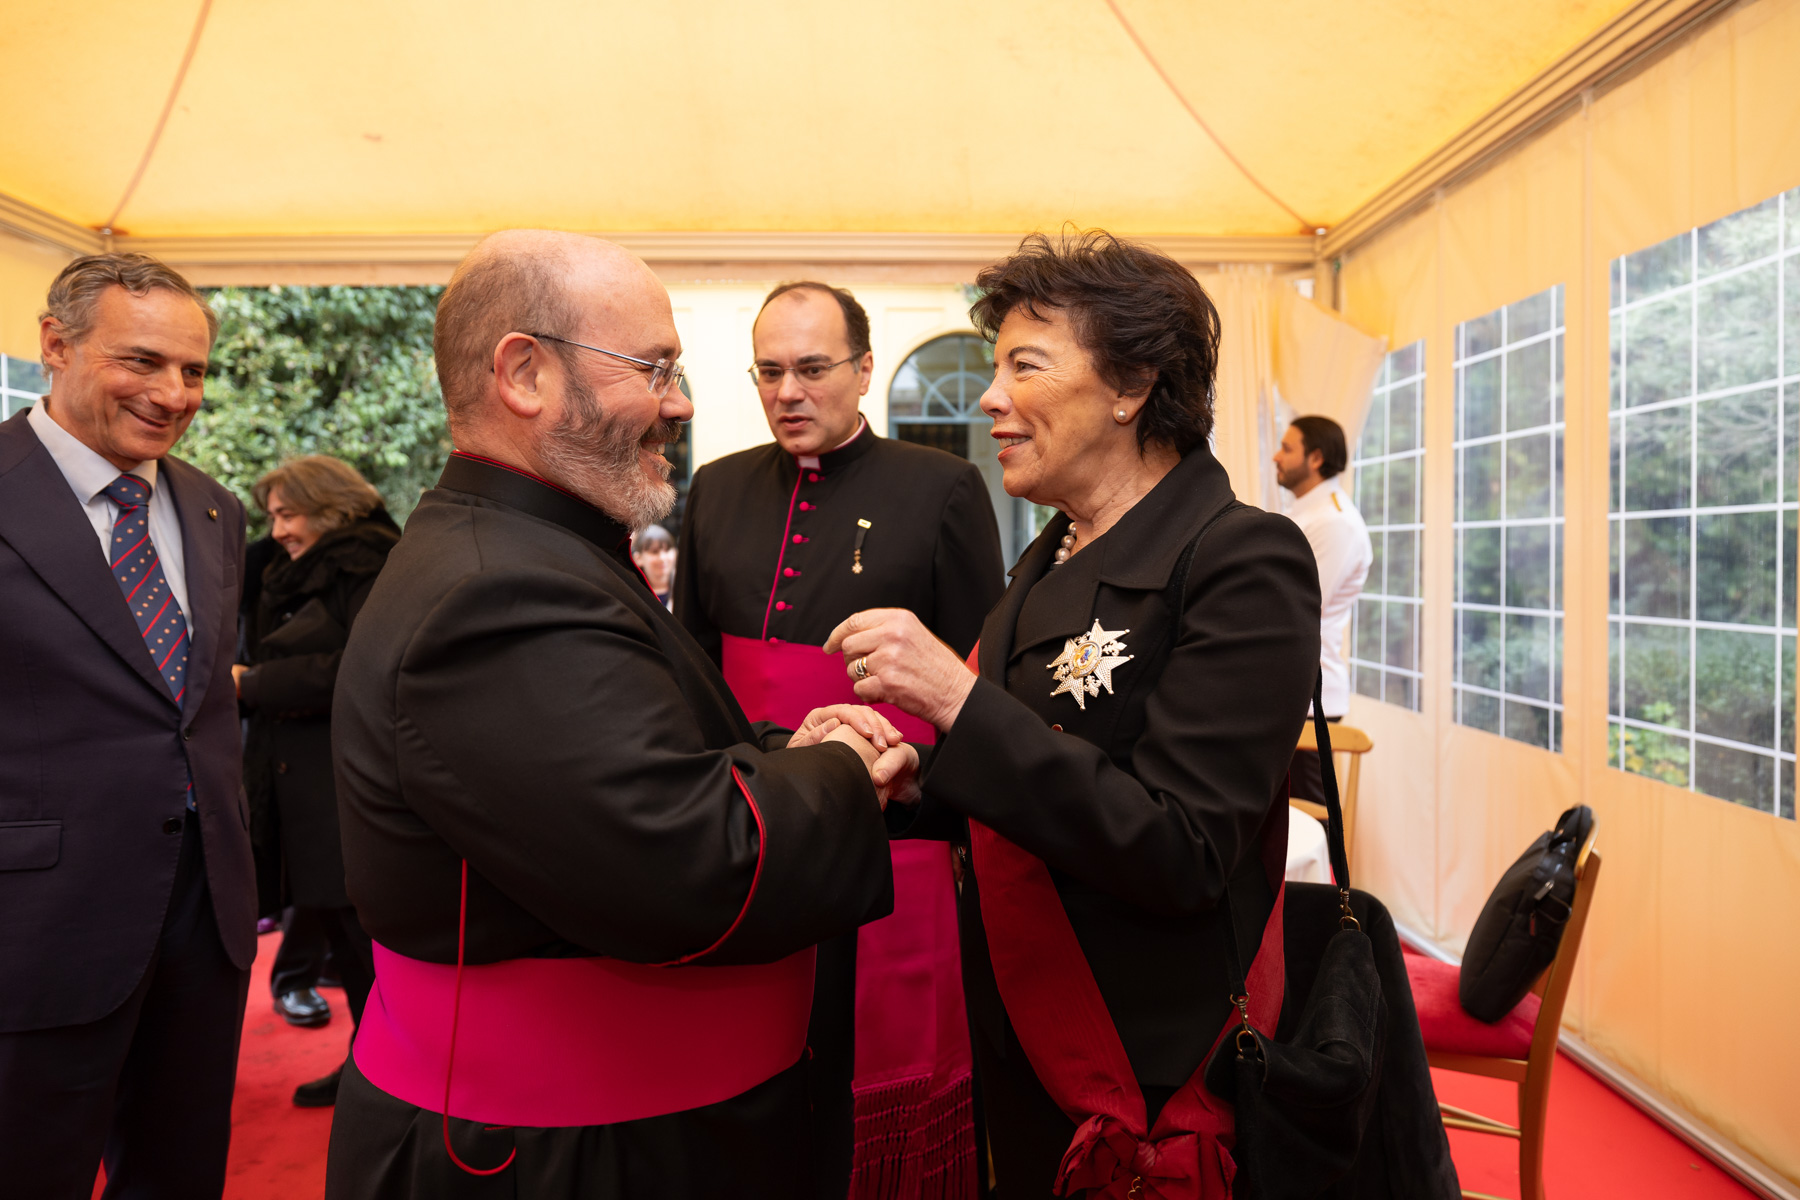 Messe zur Amtseinführung des Prälaten des Malteserordens: Einladung zum freudigen Dienen